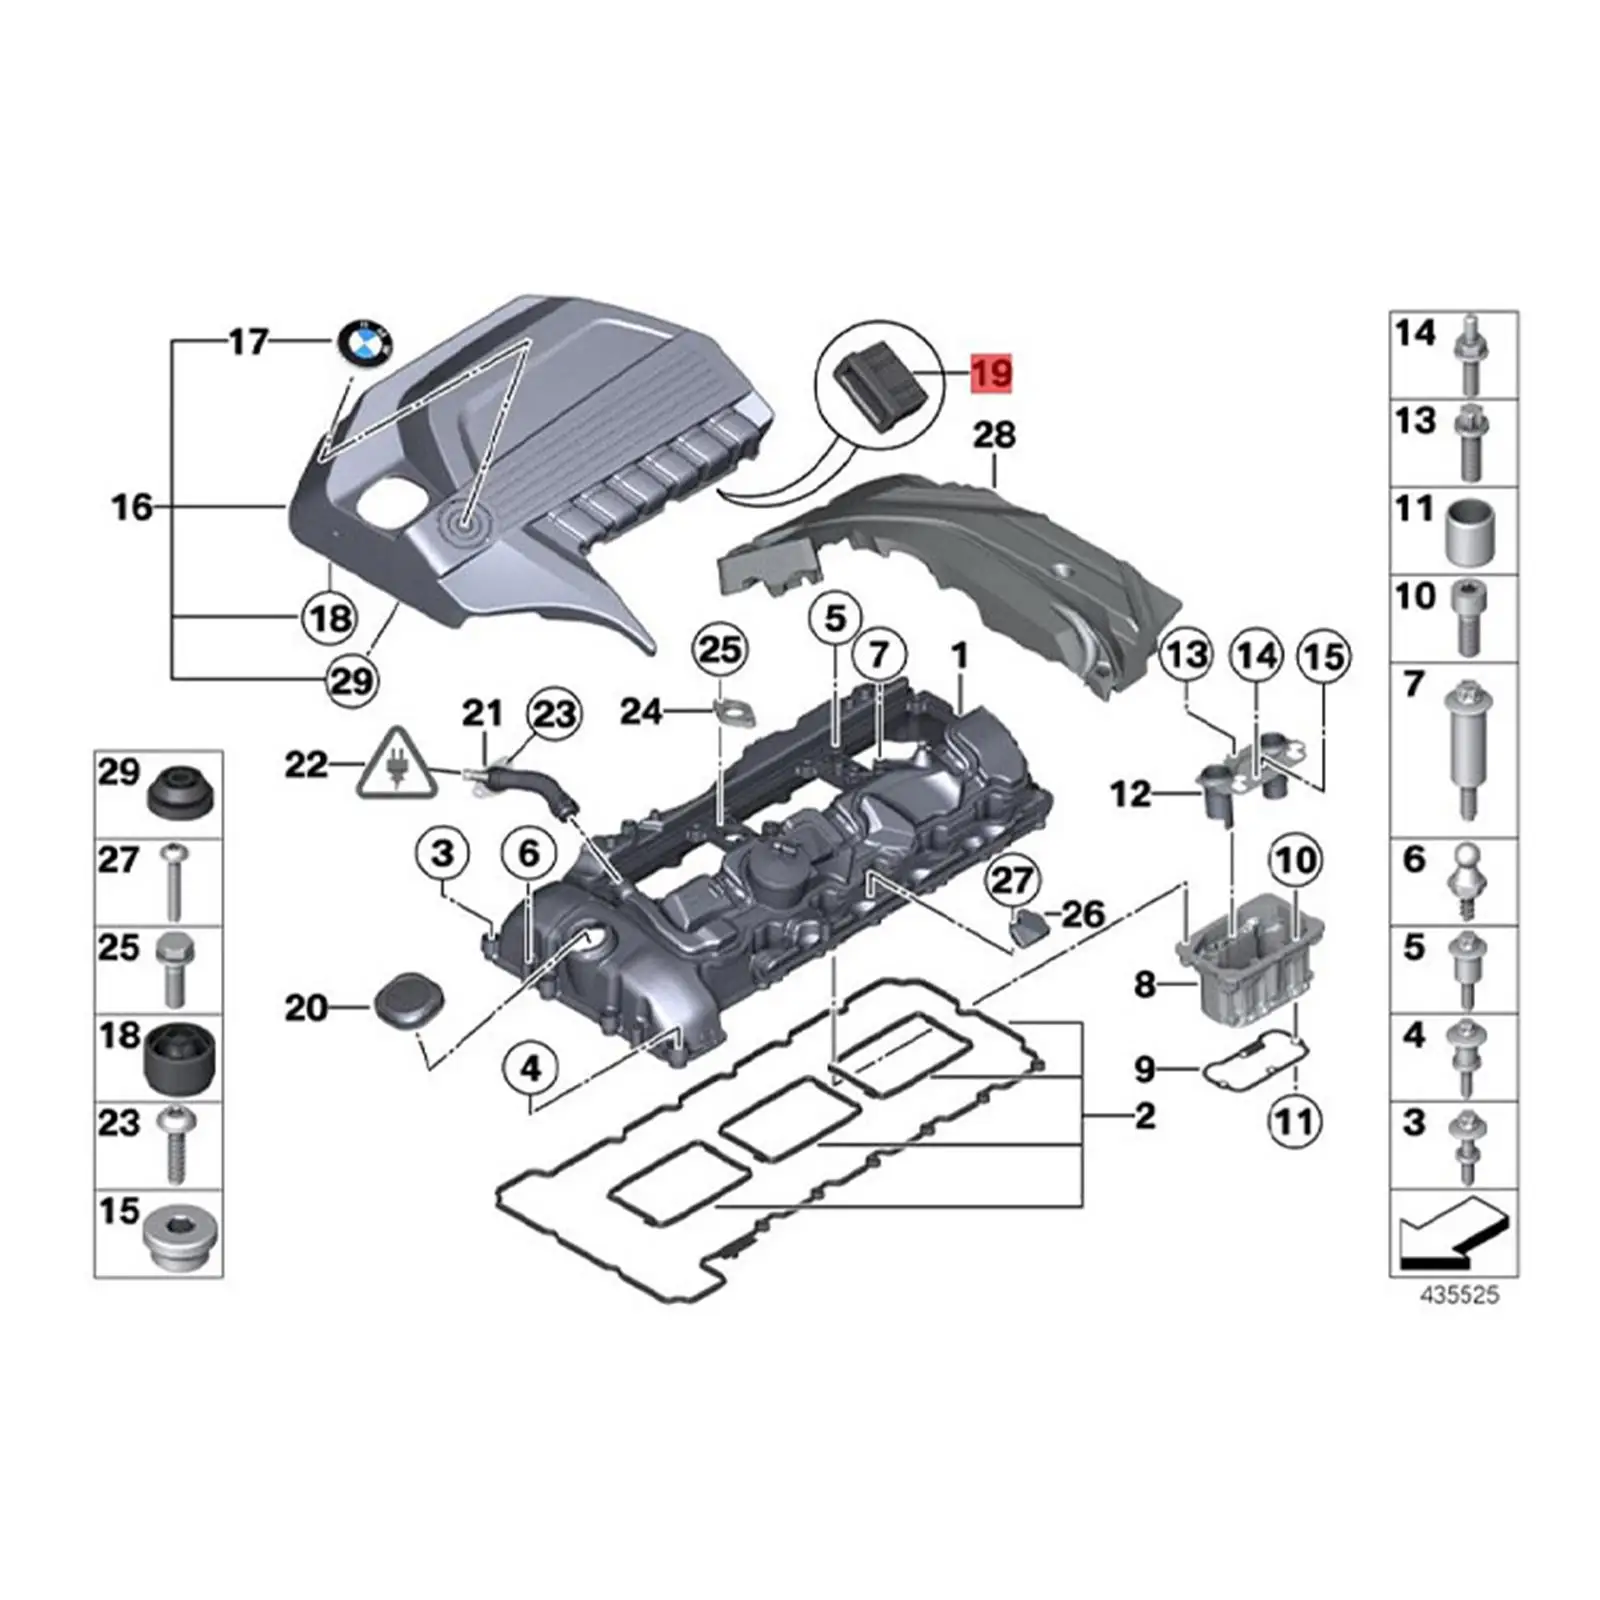 Radiator Upper Rubber Mount 17111712911 Replacement Repair Parts for BMW E32 735i E39 528i E38 750il E32 740il E34 540i